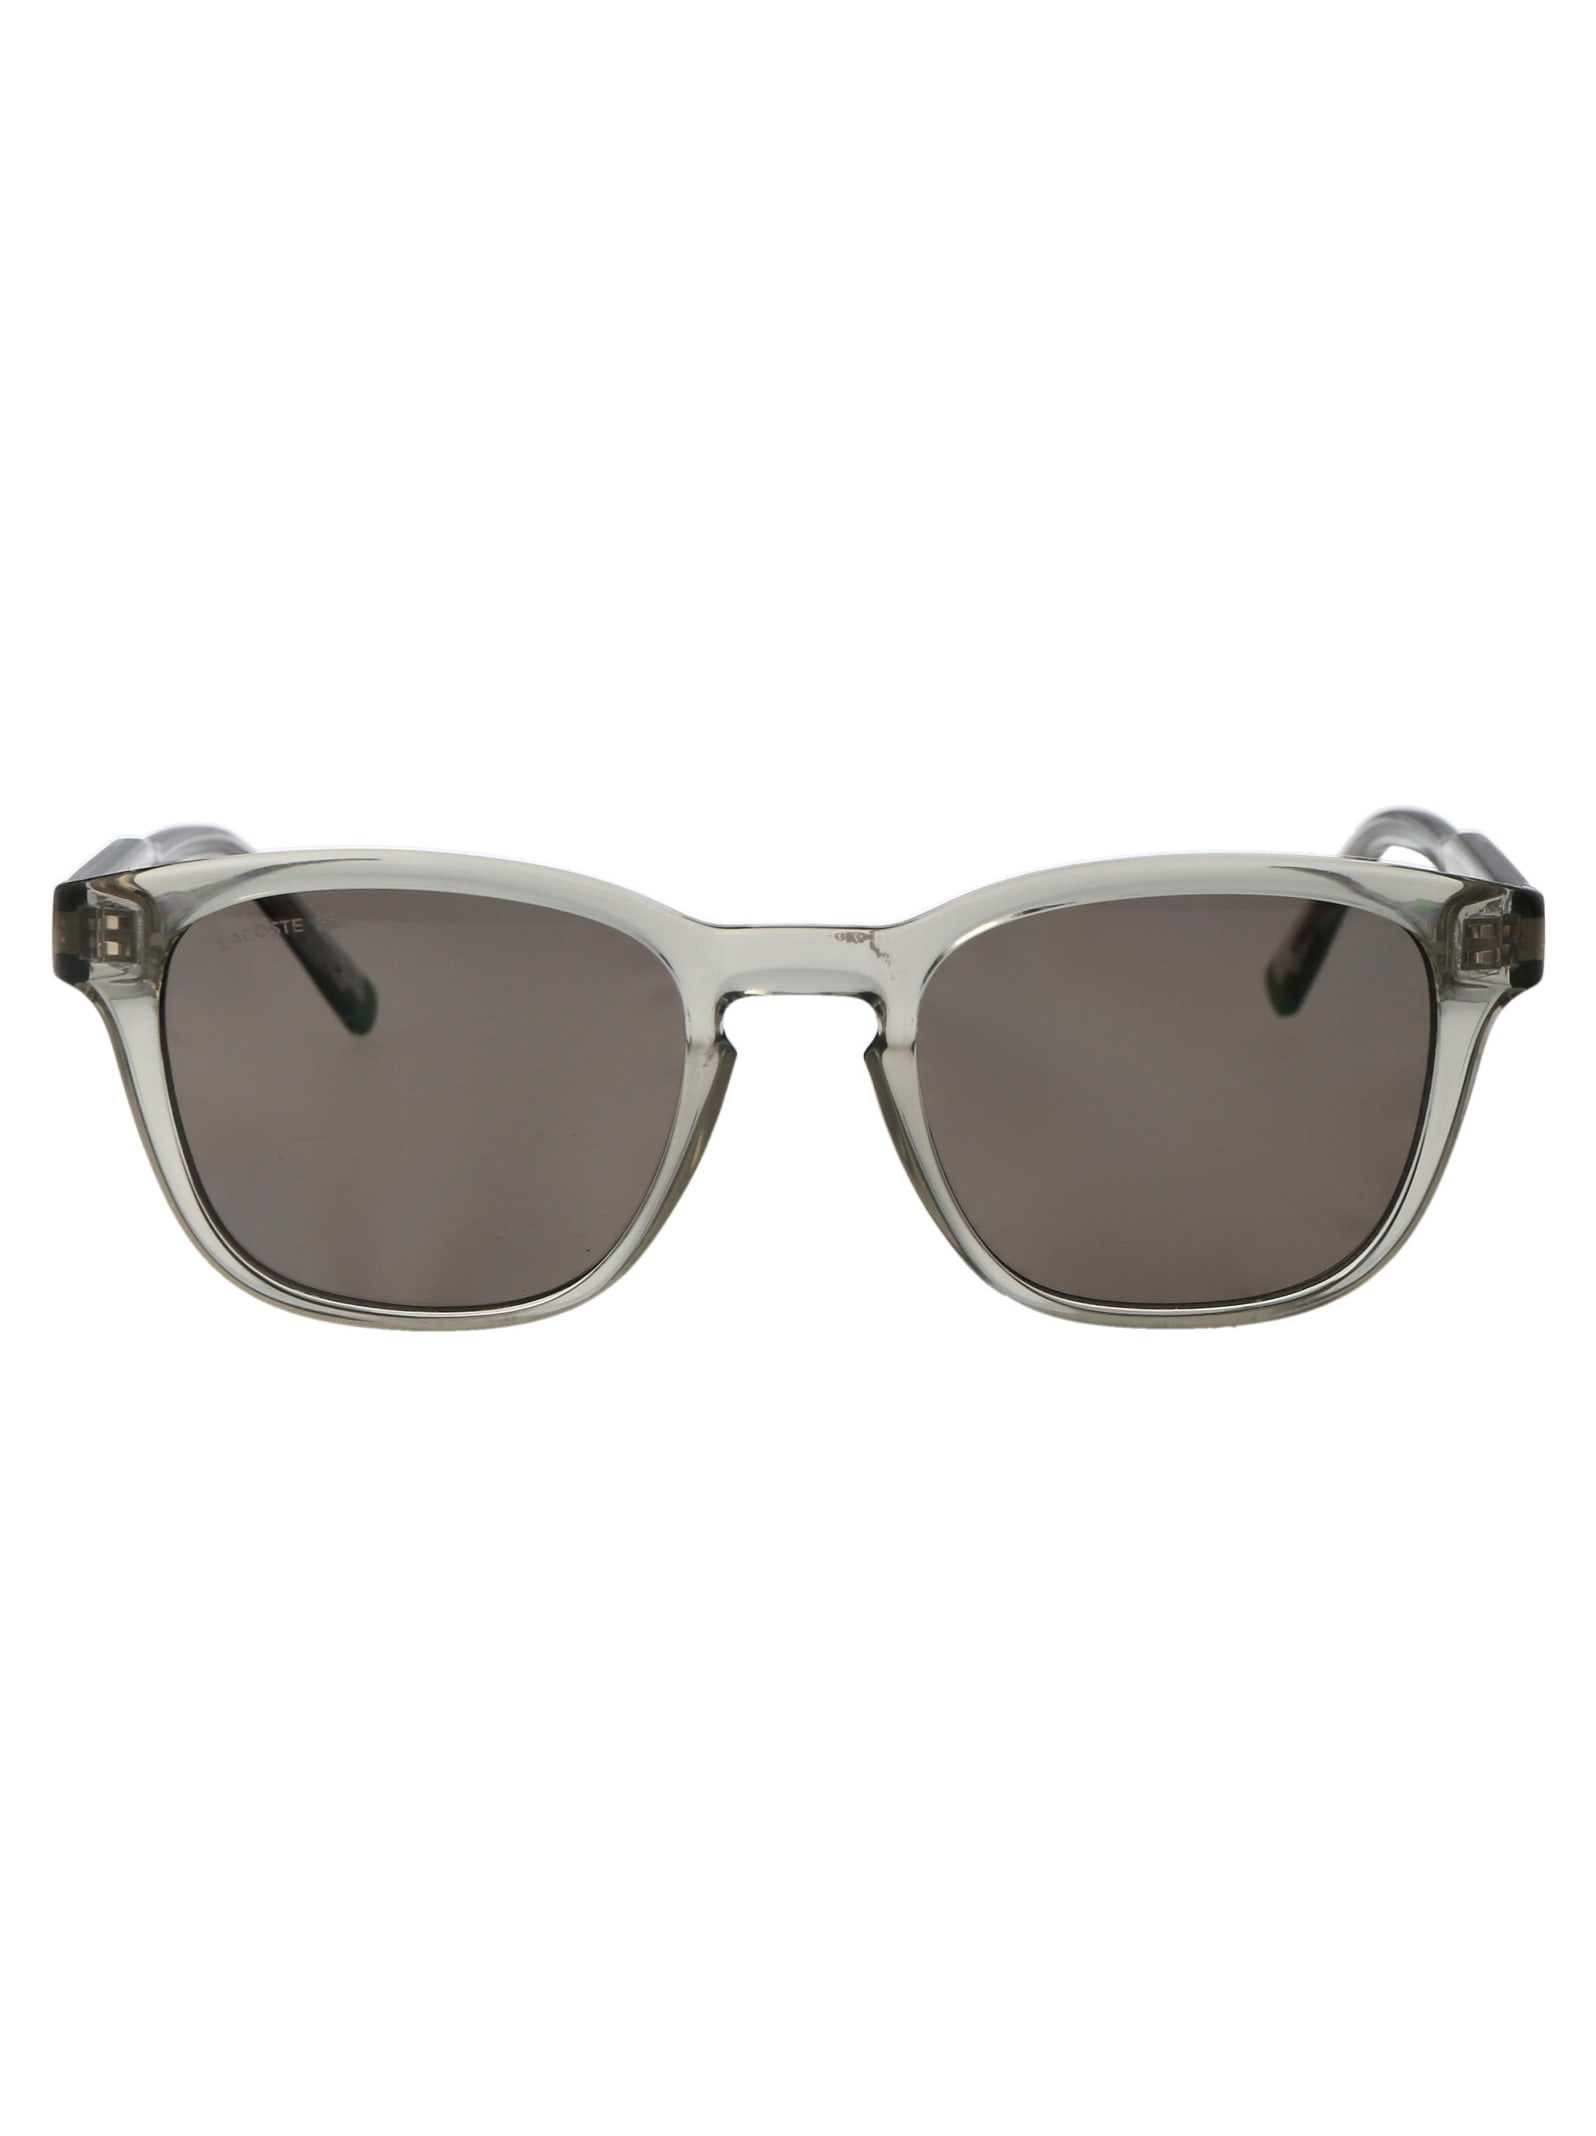 L6026s Sunglasses